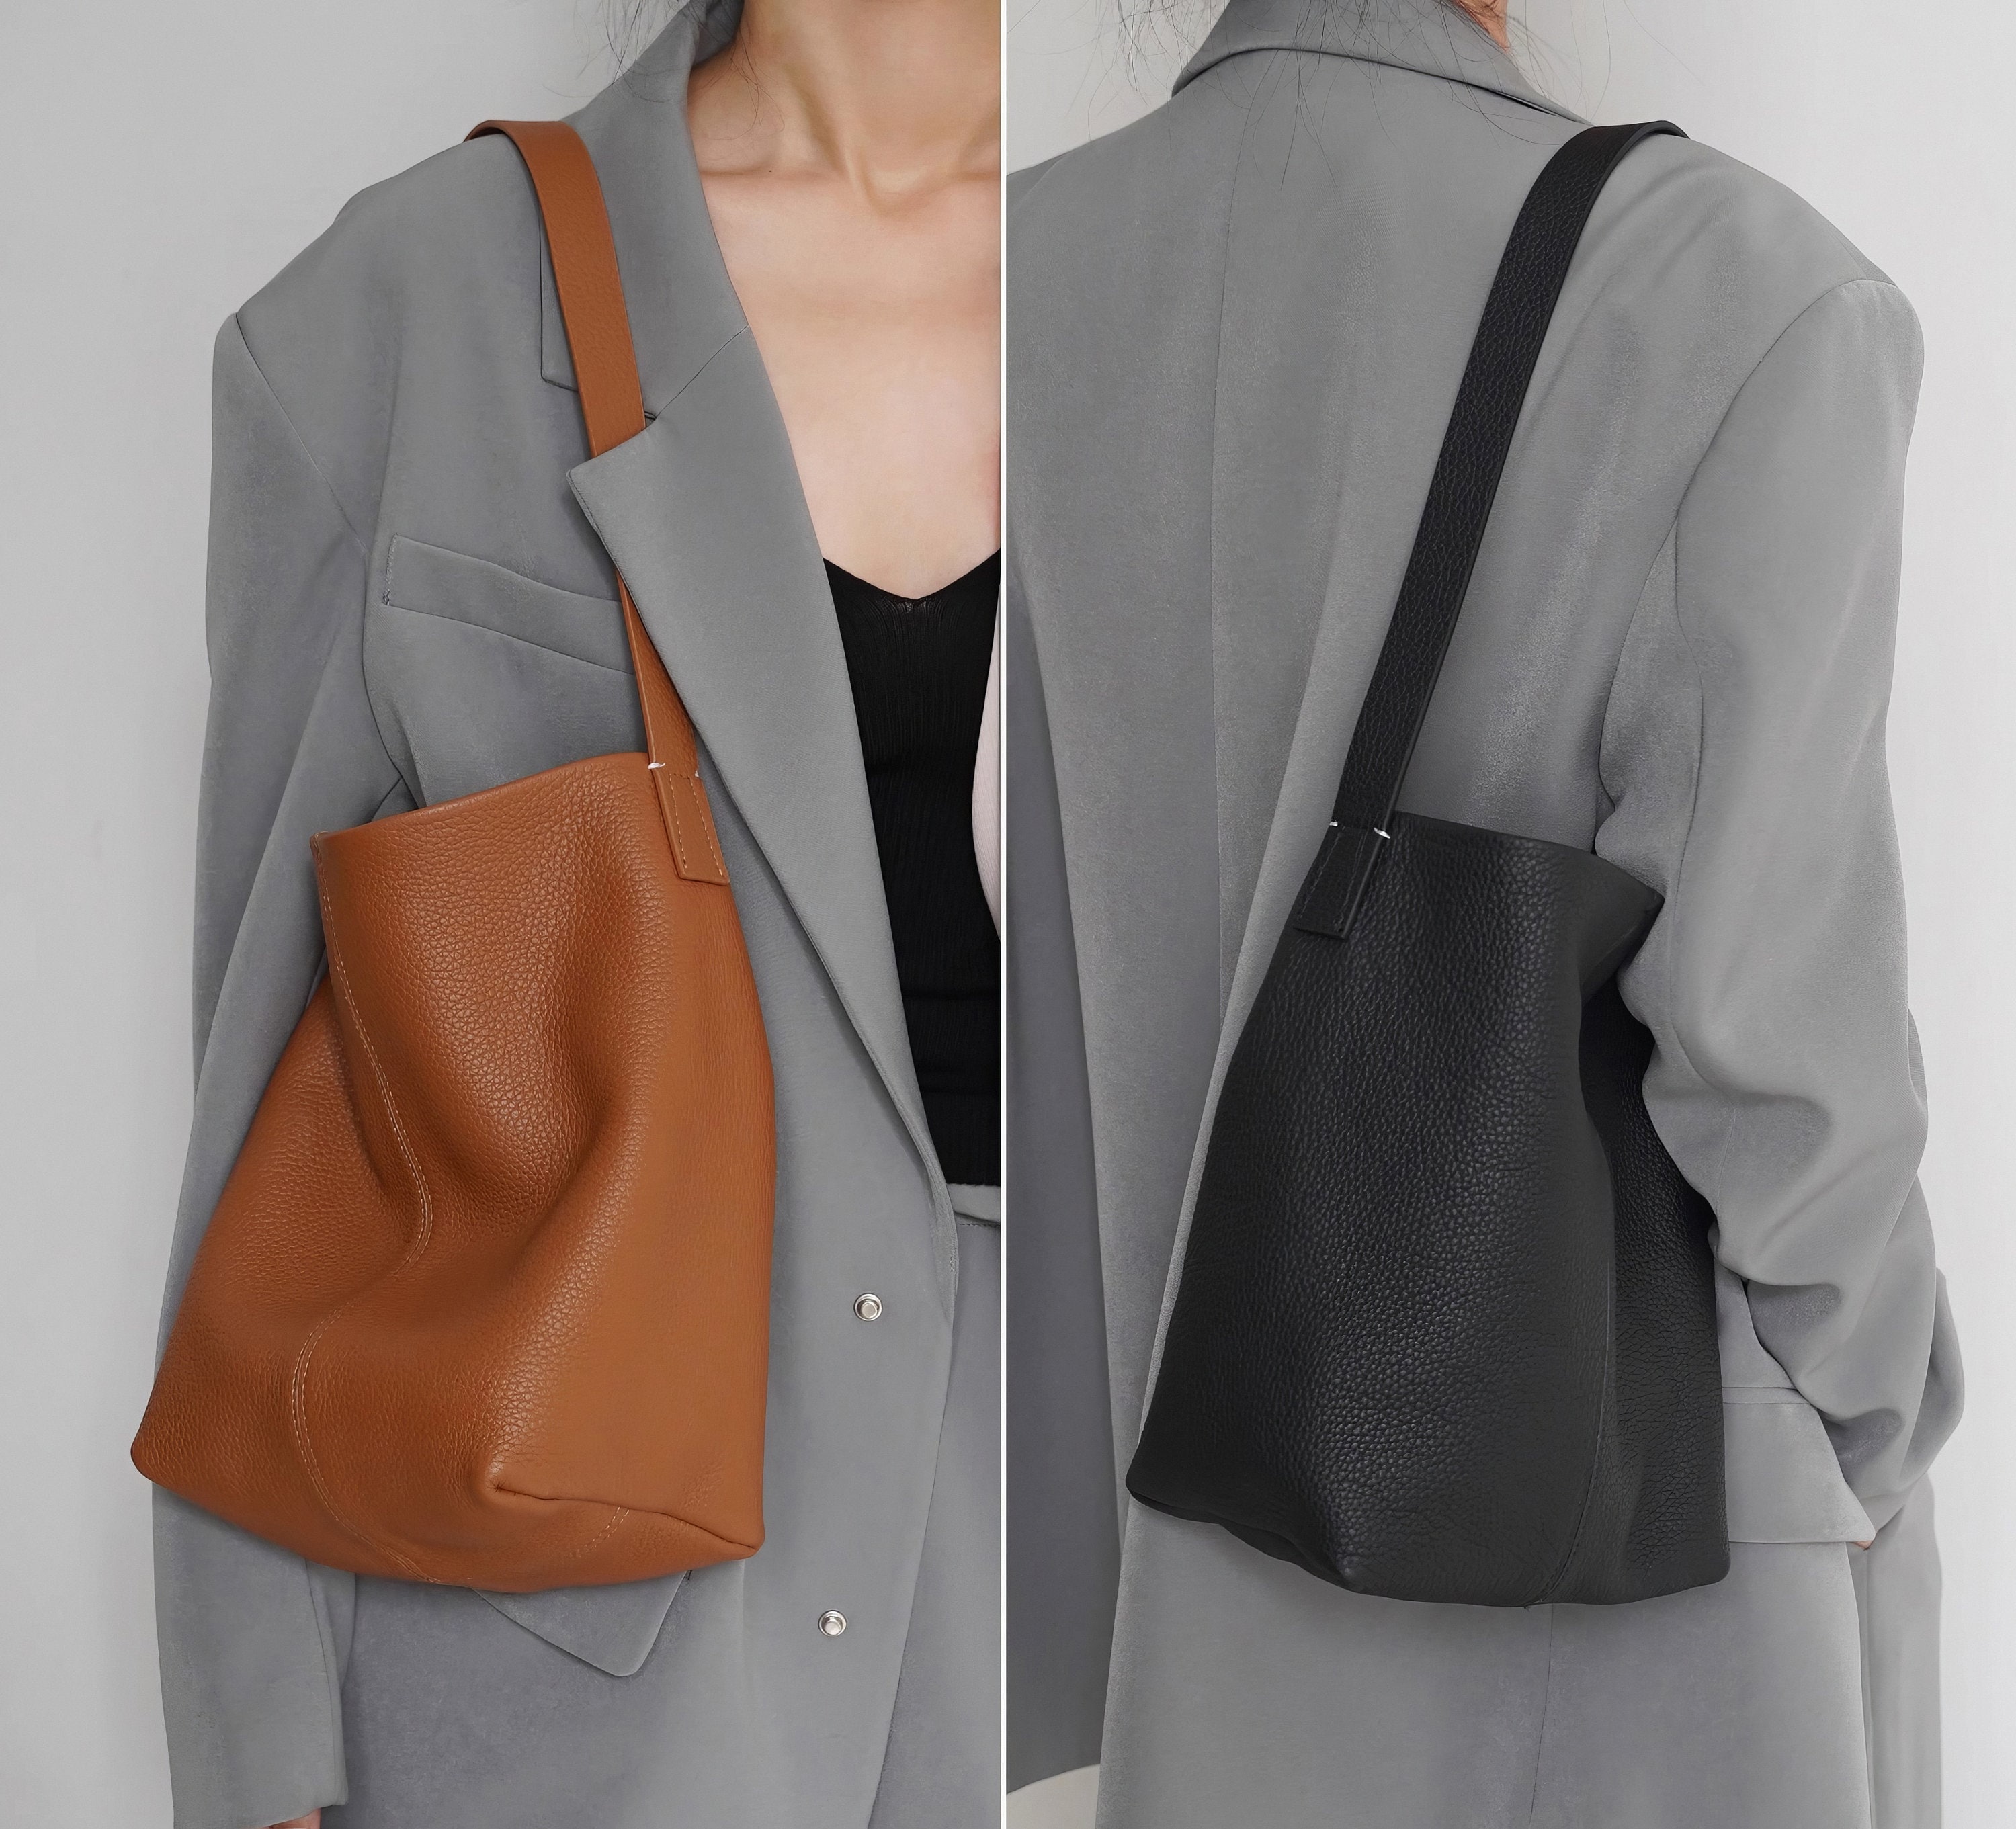 Togo Leather Tote Bag DIY Handbag Kit – Babylon Leather